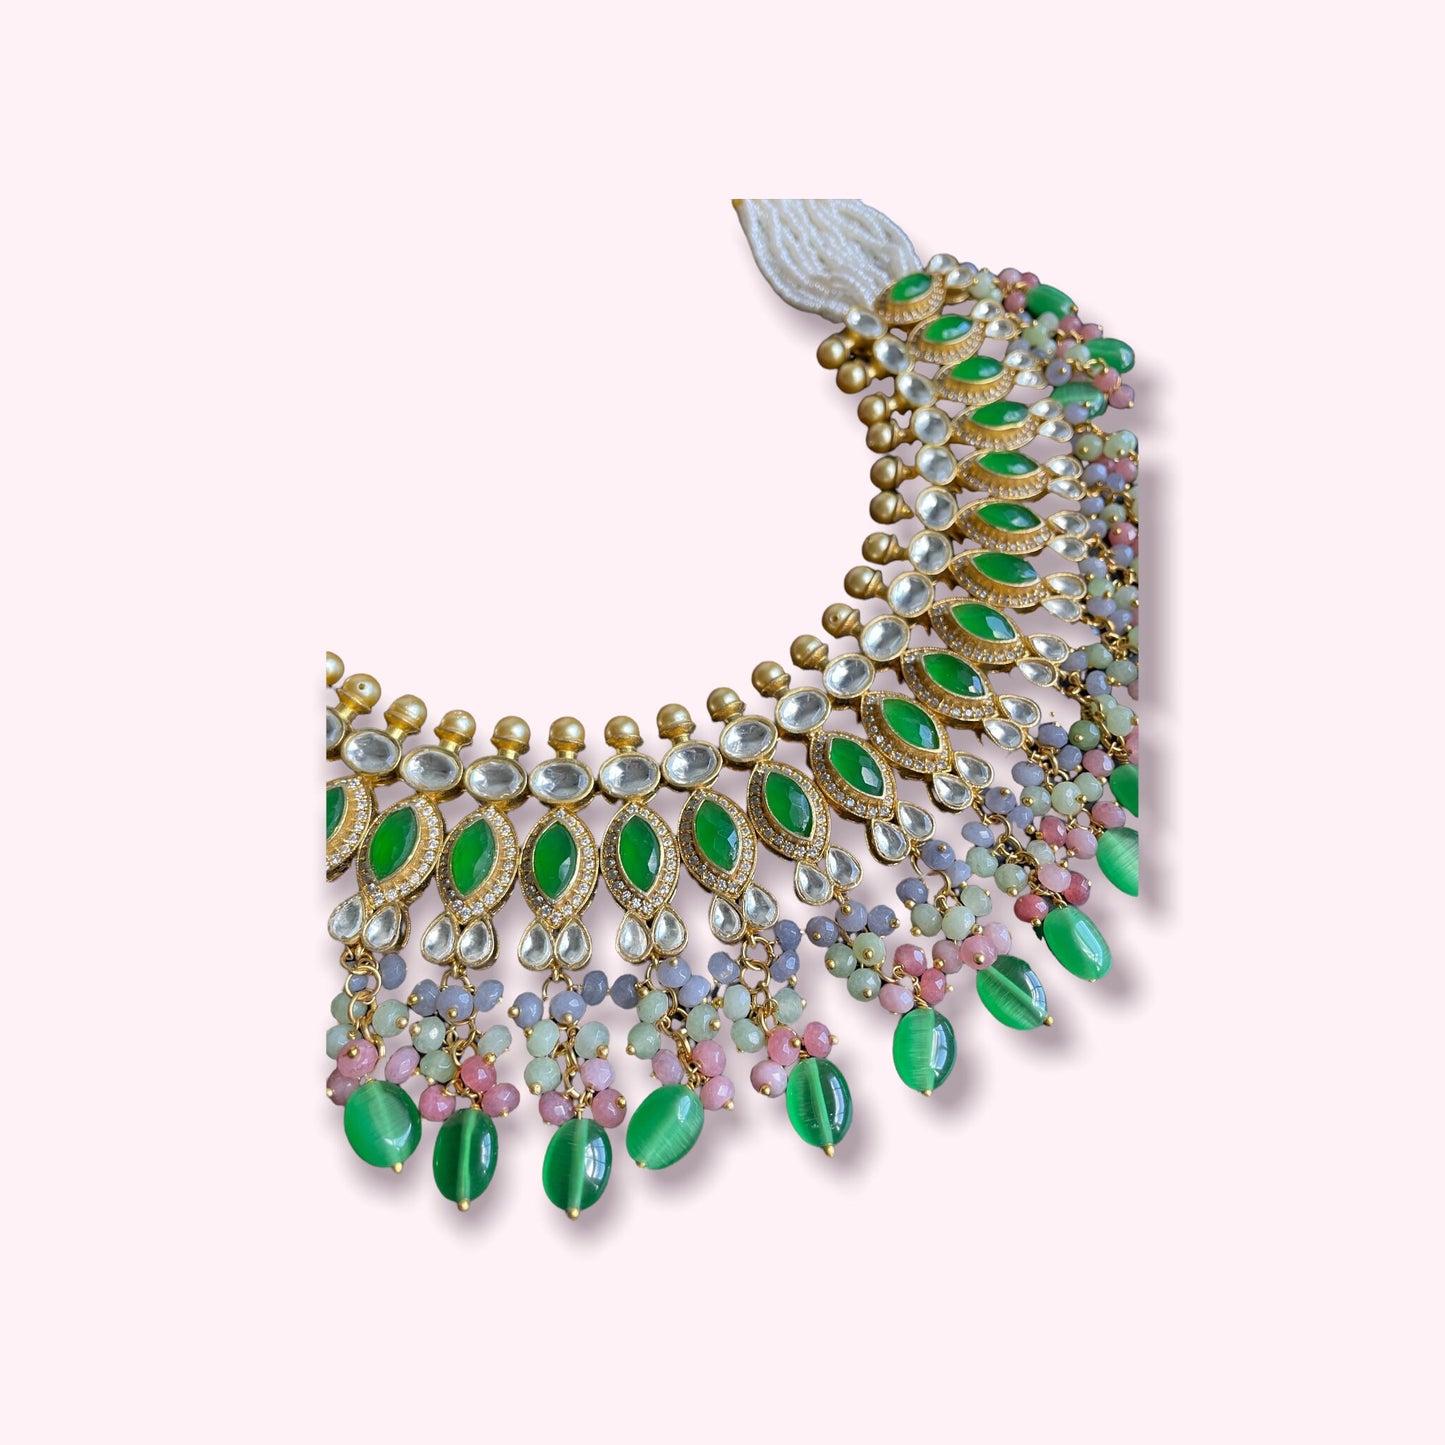 Kundan Meena Neckalce con pendientes/gargantilla inspirada en Sabyasachi/gargantilla verde nupcial india/conjunto de collares brillantes y únicos/regalos únicos para